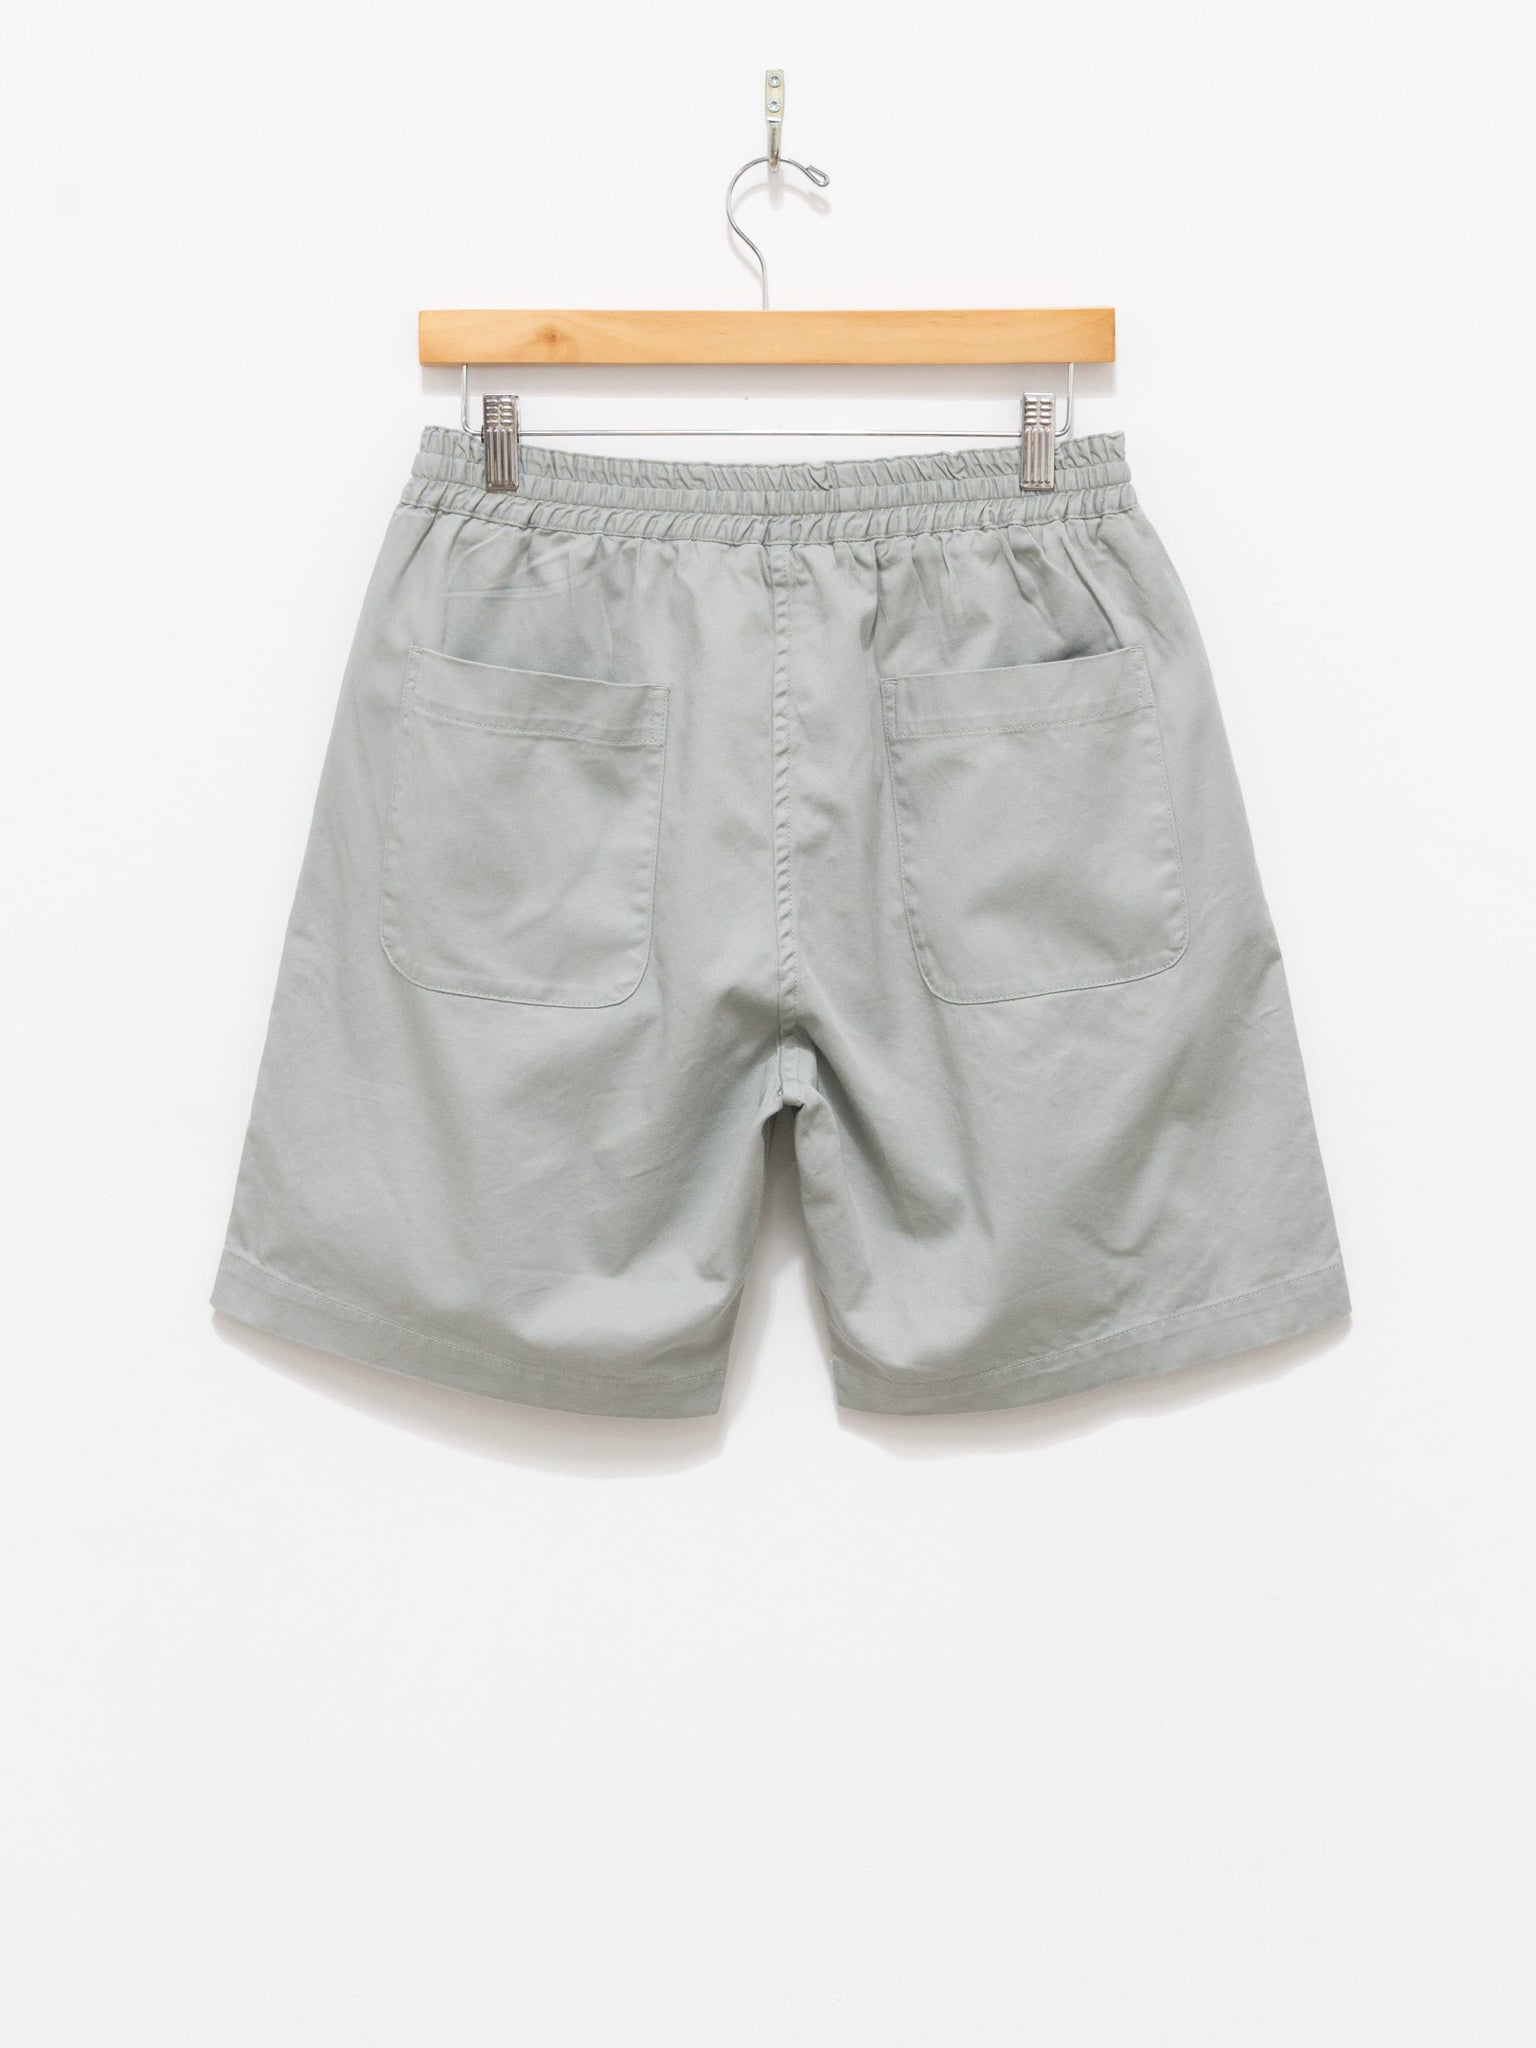 Namu Shop - Fujito Line Easy Shorts - Grayish Green